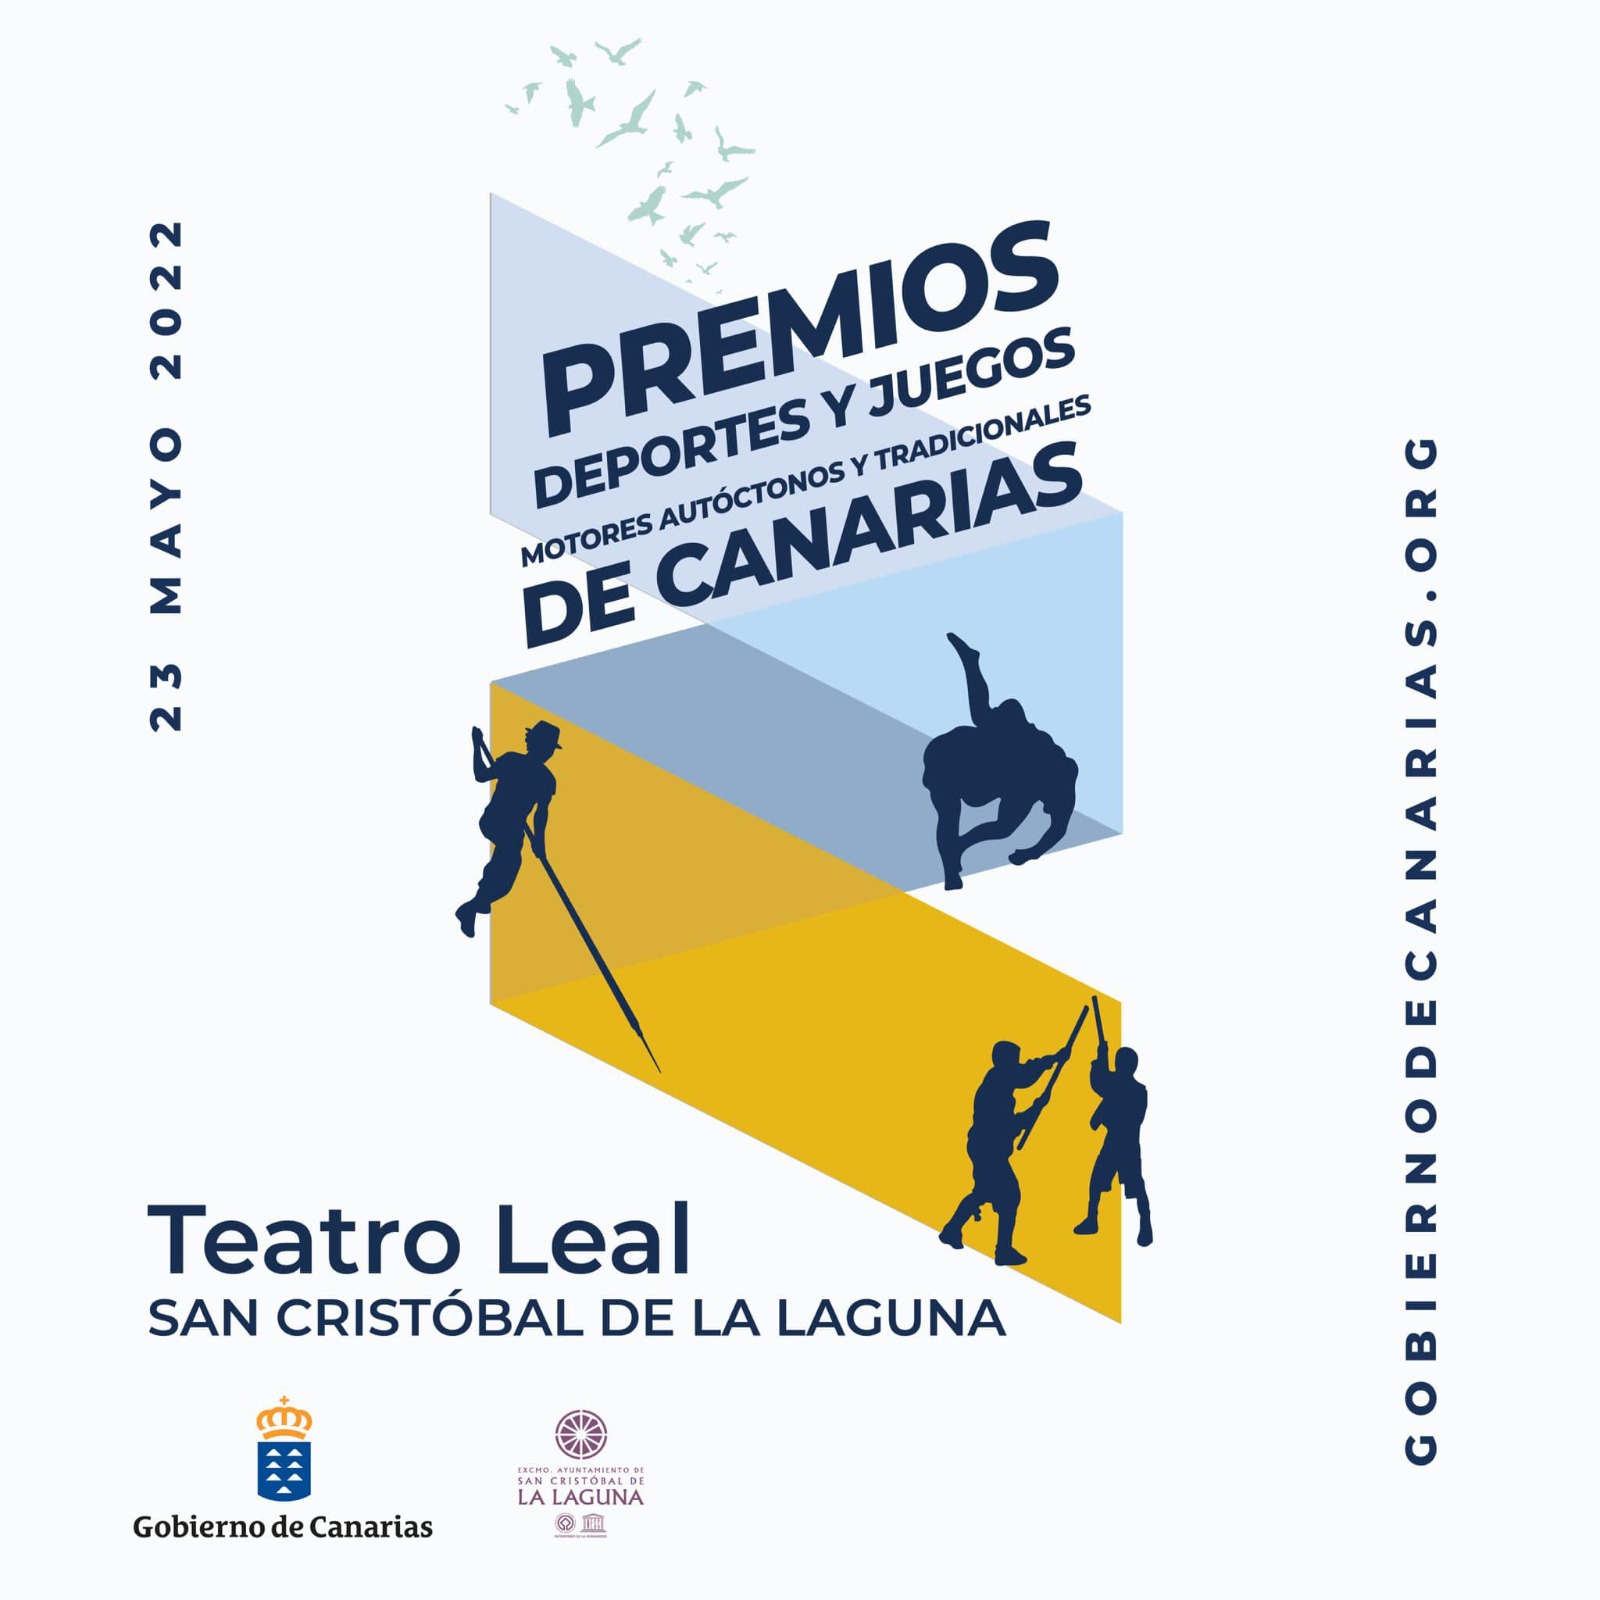 Premios Deportes y Juegos, Motores Autóctonos y Tradicionales de Canarias